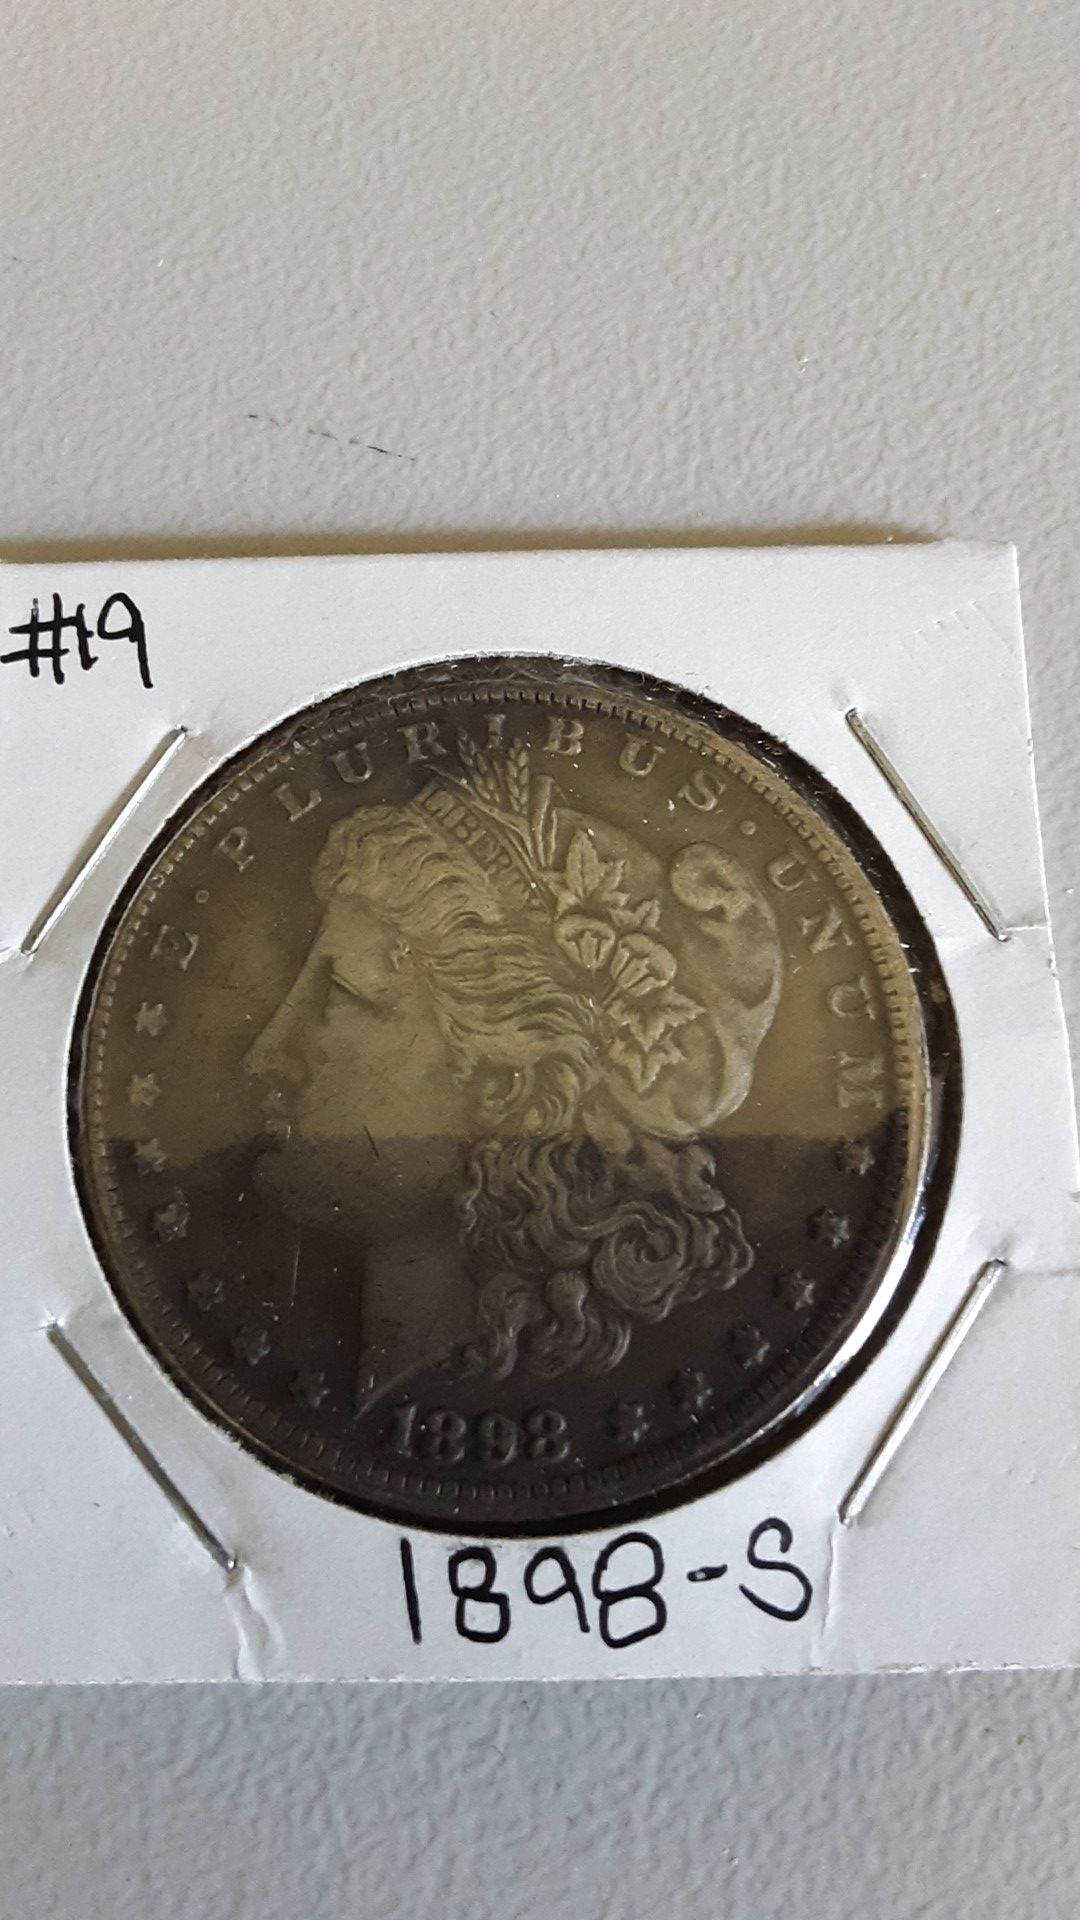 1898-S Morgan Silver Dollar Coin